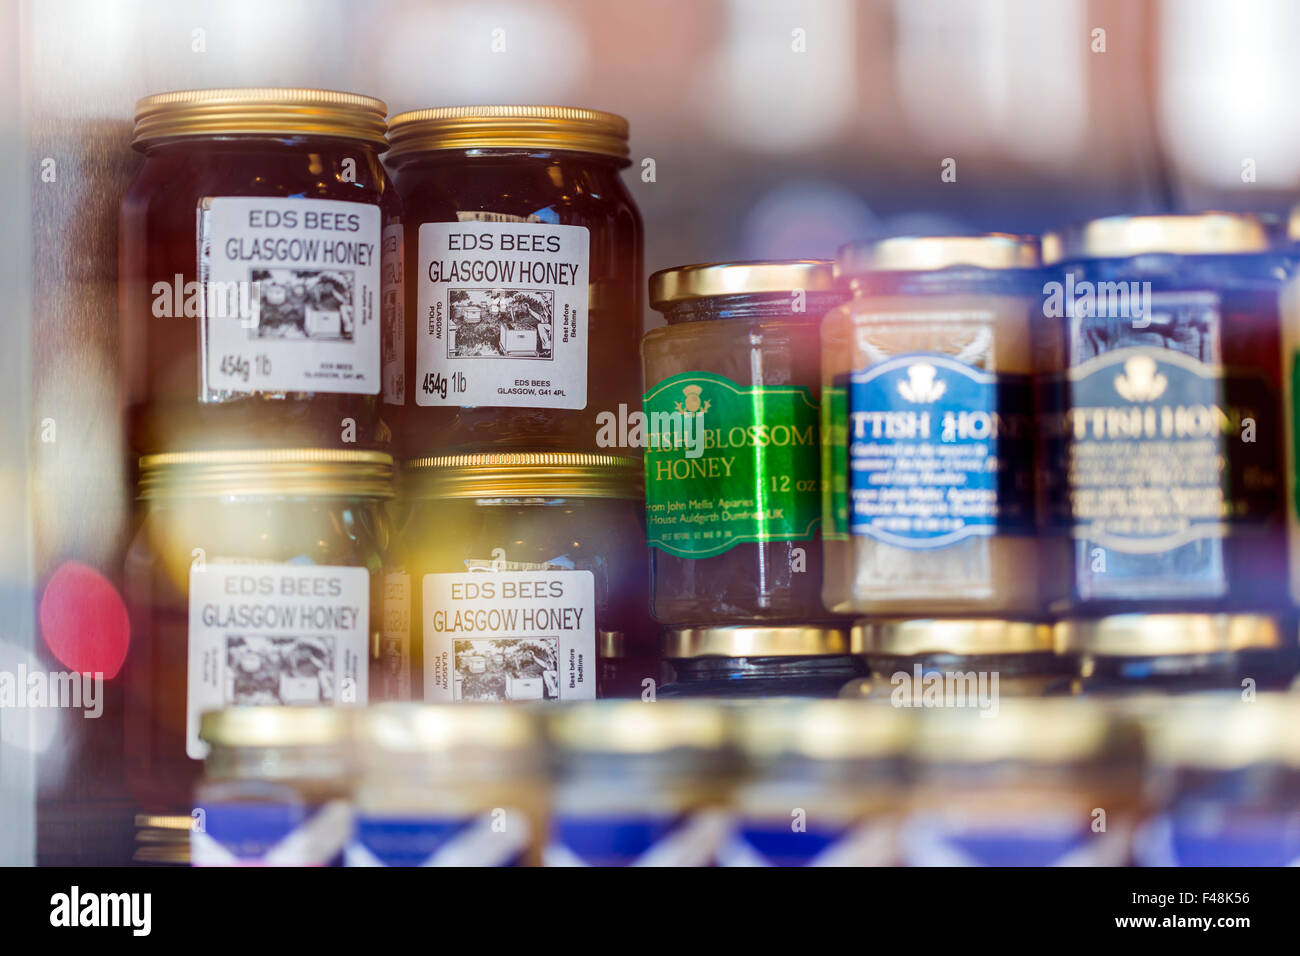 Tarros de miel local en exhibición en una ventana de tienda, Glasgow, Escocia, Reino Unido Foto de stock